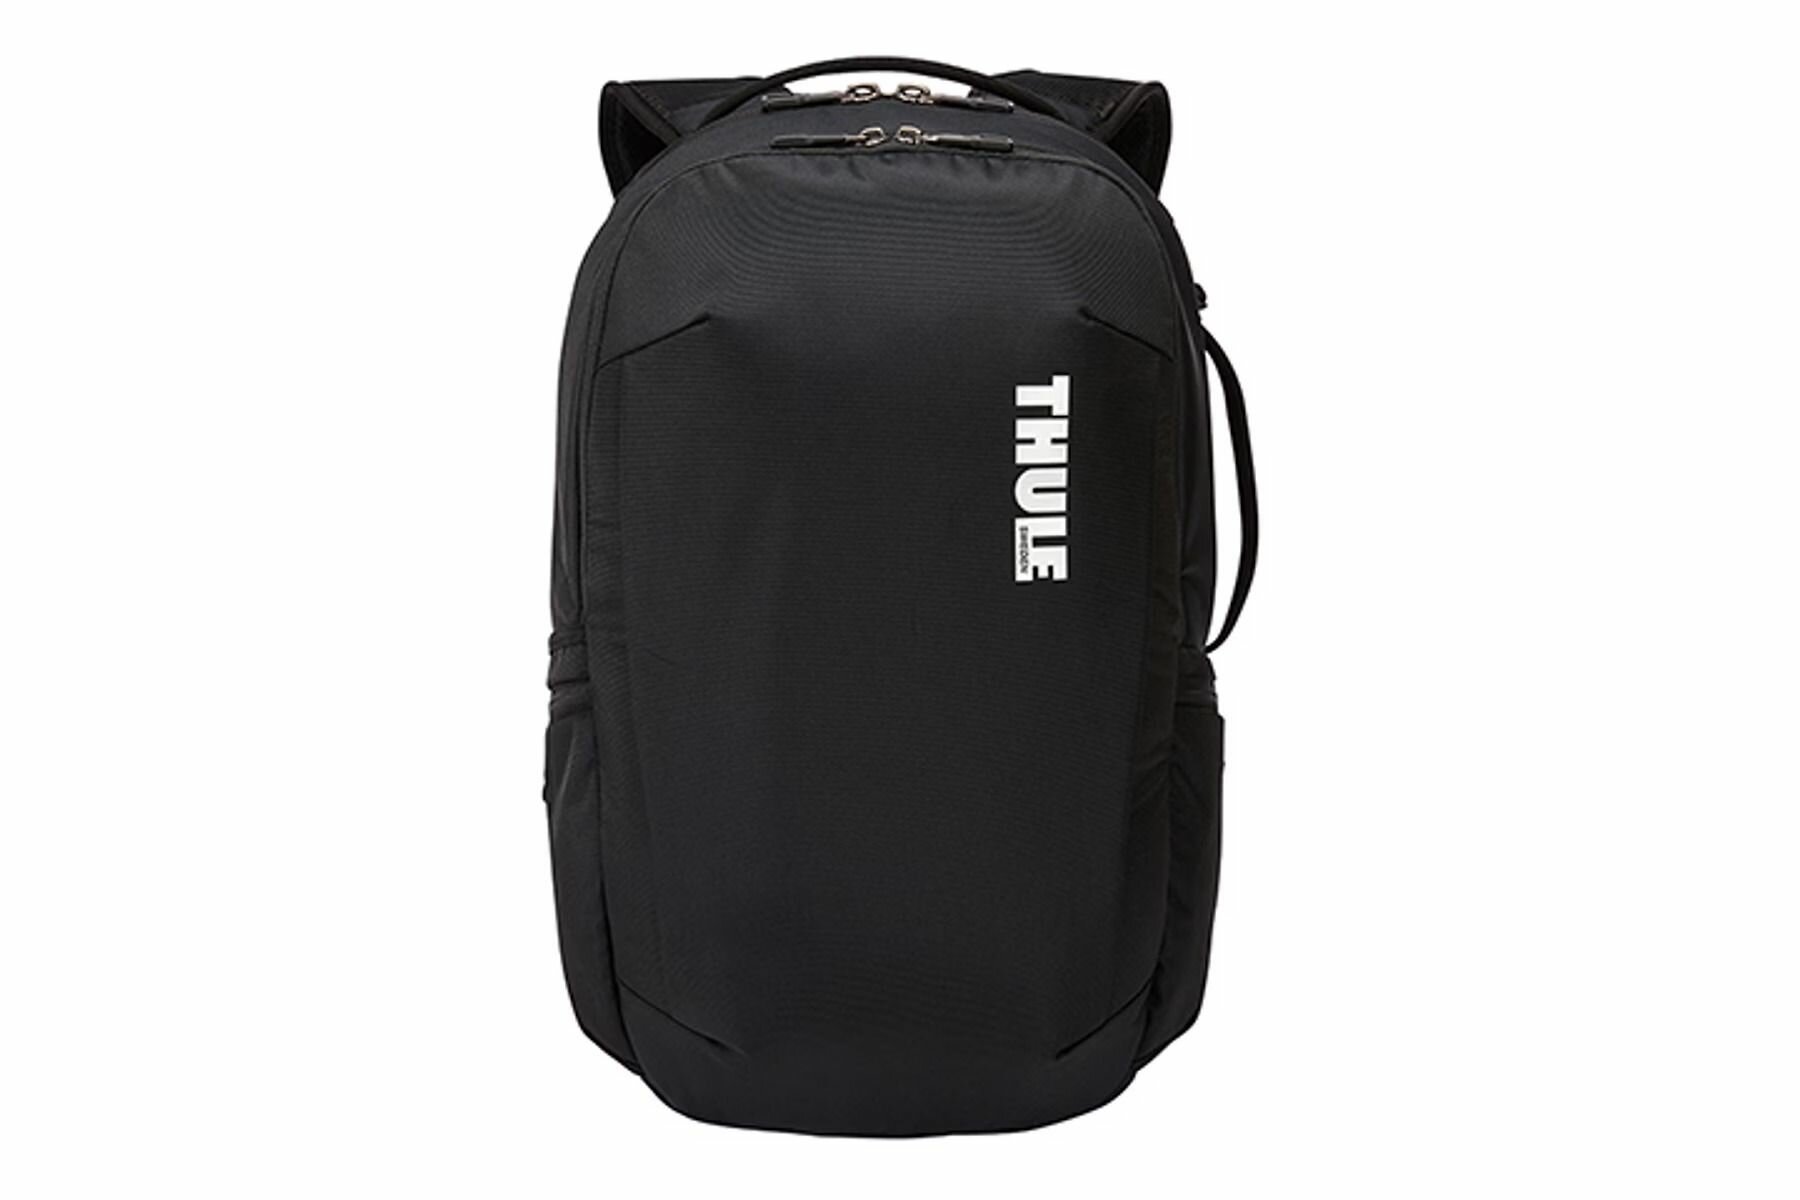 Городской рюкзак Thule Subterra Backpack TSLB317, 30 литров, черный